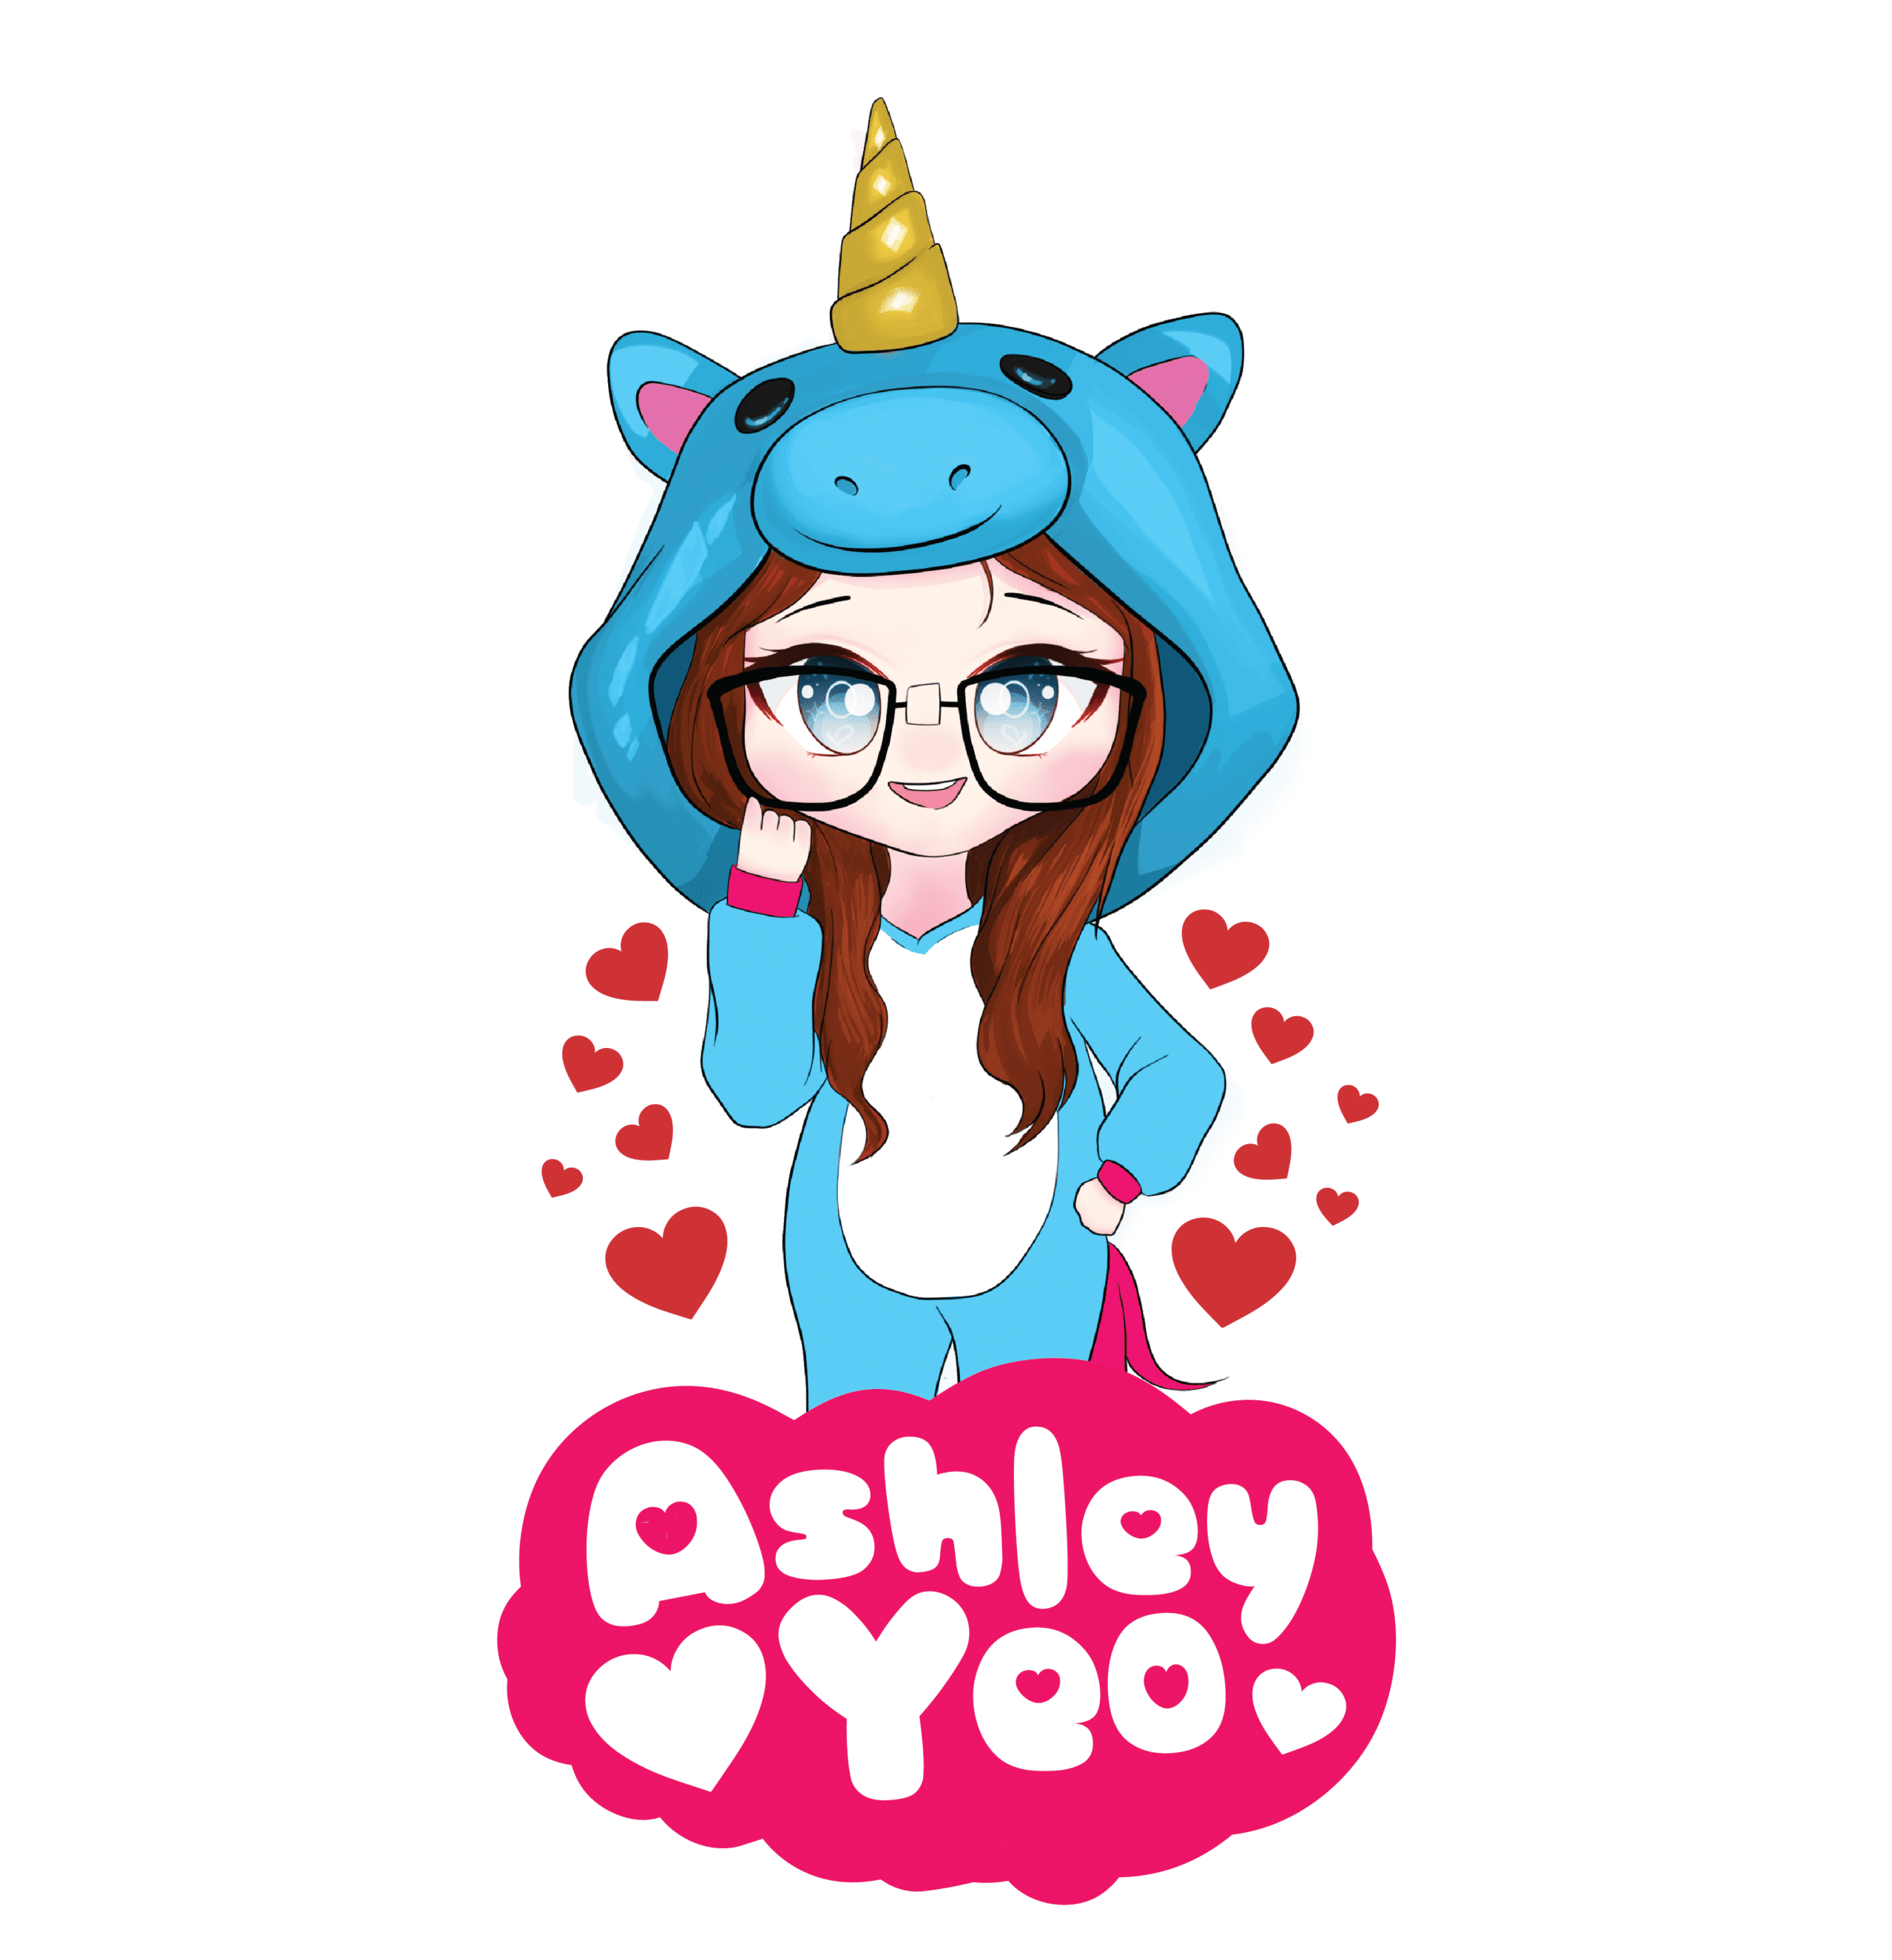 Ashley Yeo